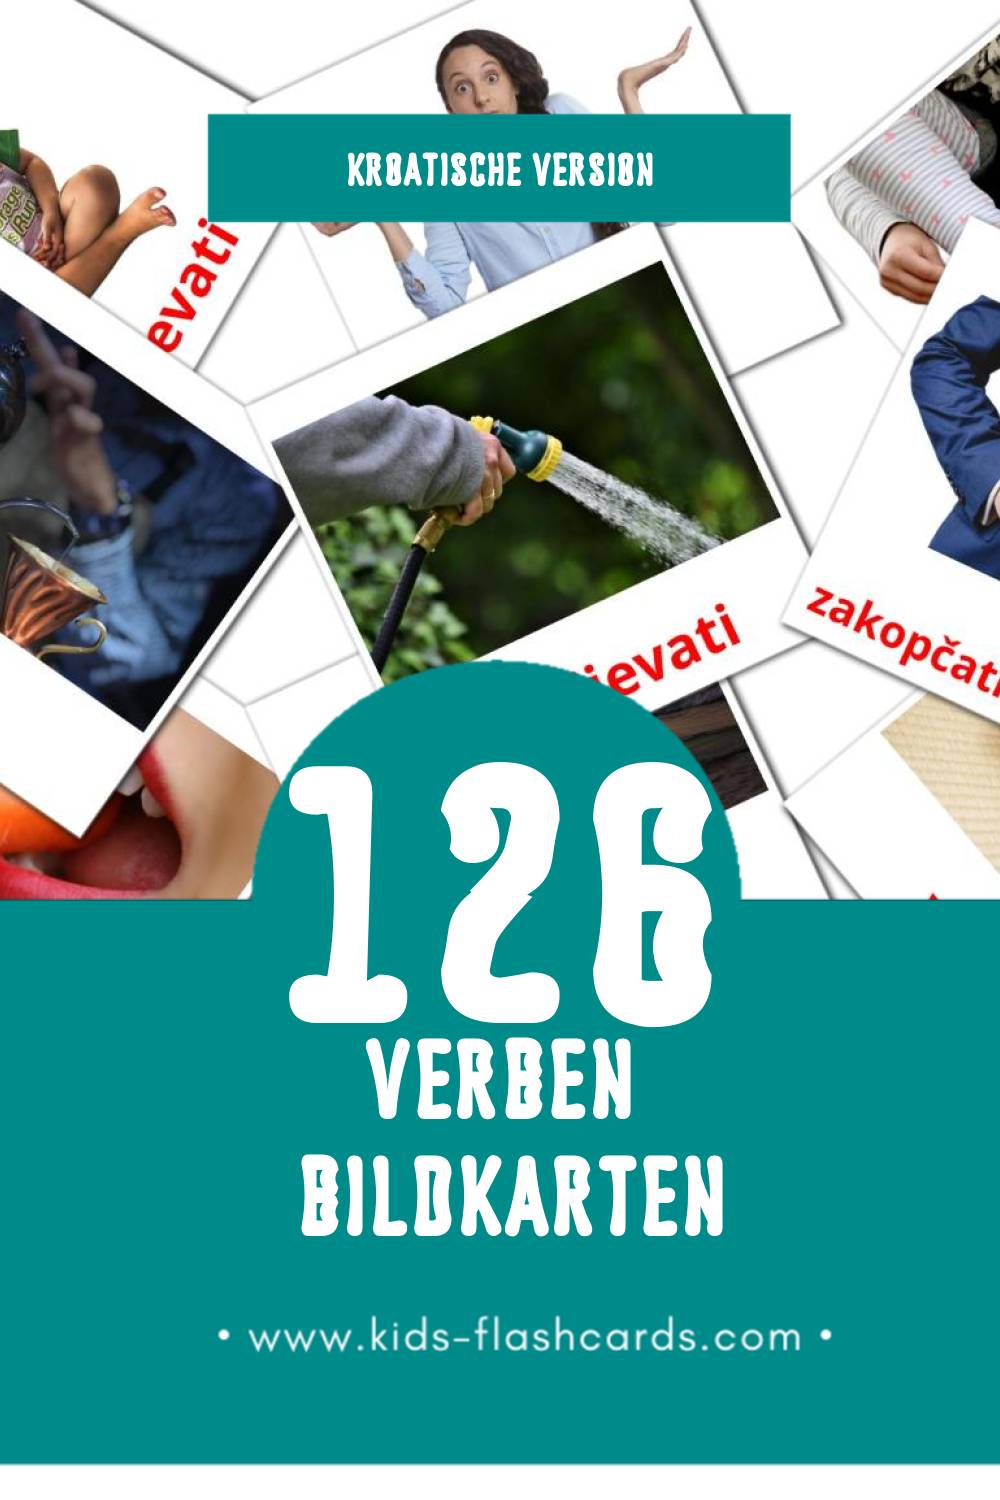 Visual Glagoli Flashcards für Kleinkinder (126 Karten in Kroatisch)